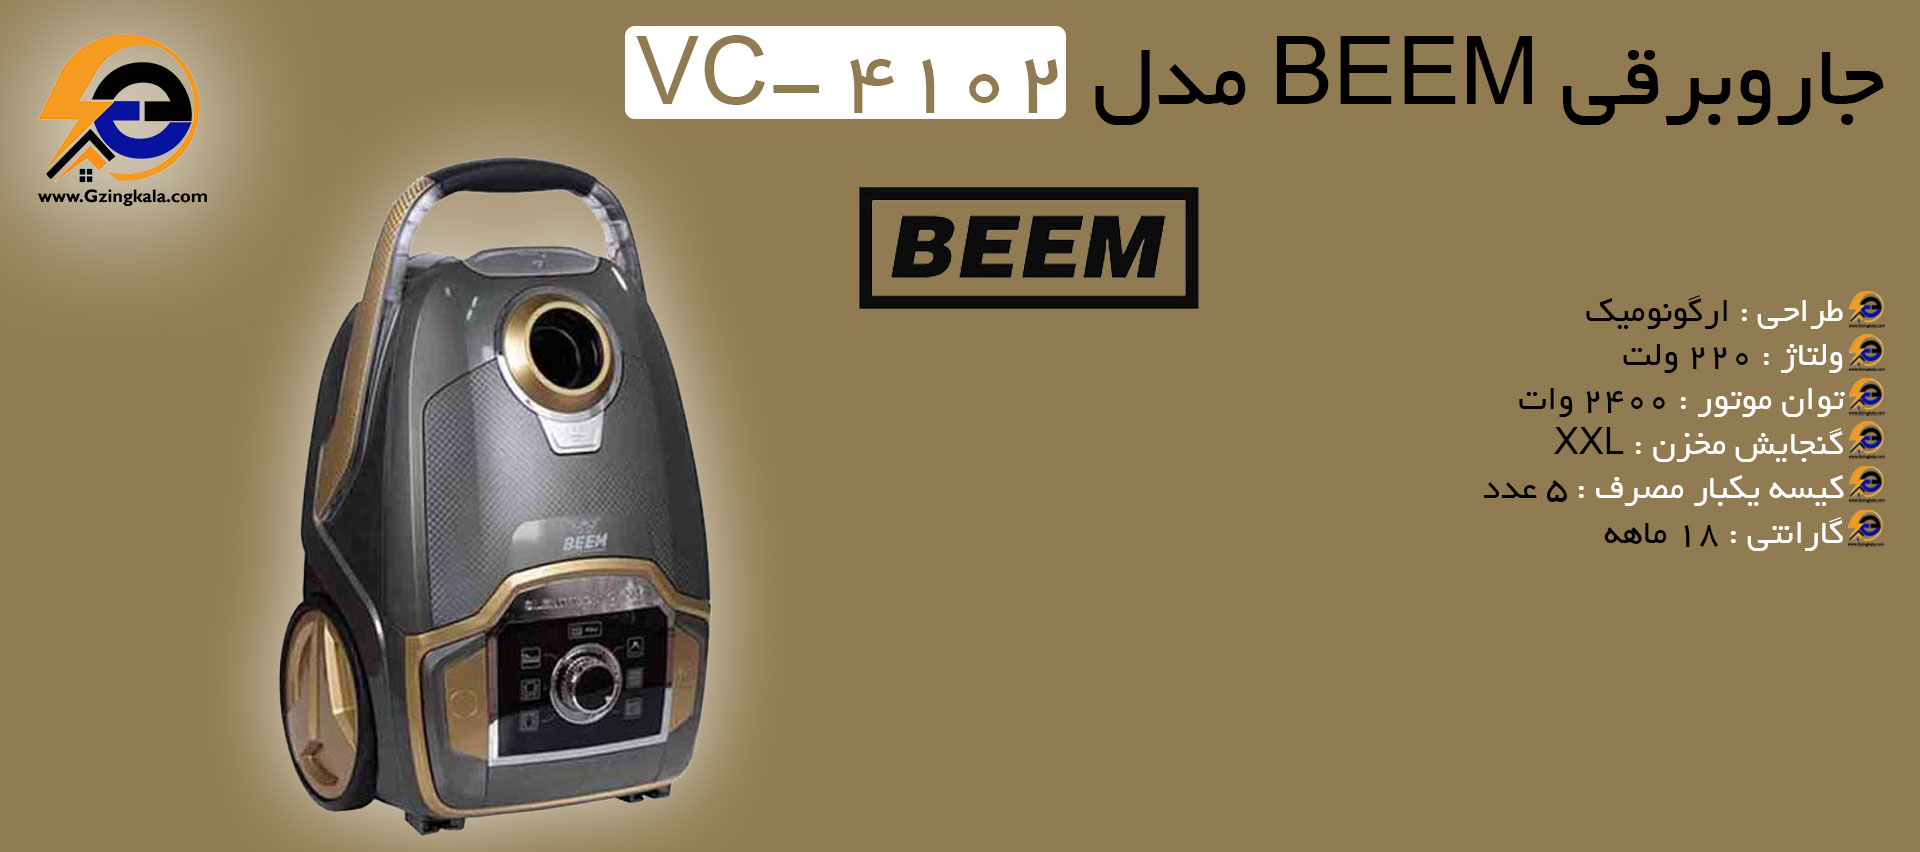 جاروبرقی BEEM مدل VC- 4102